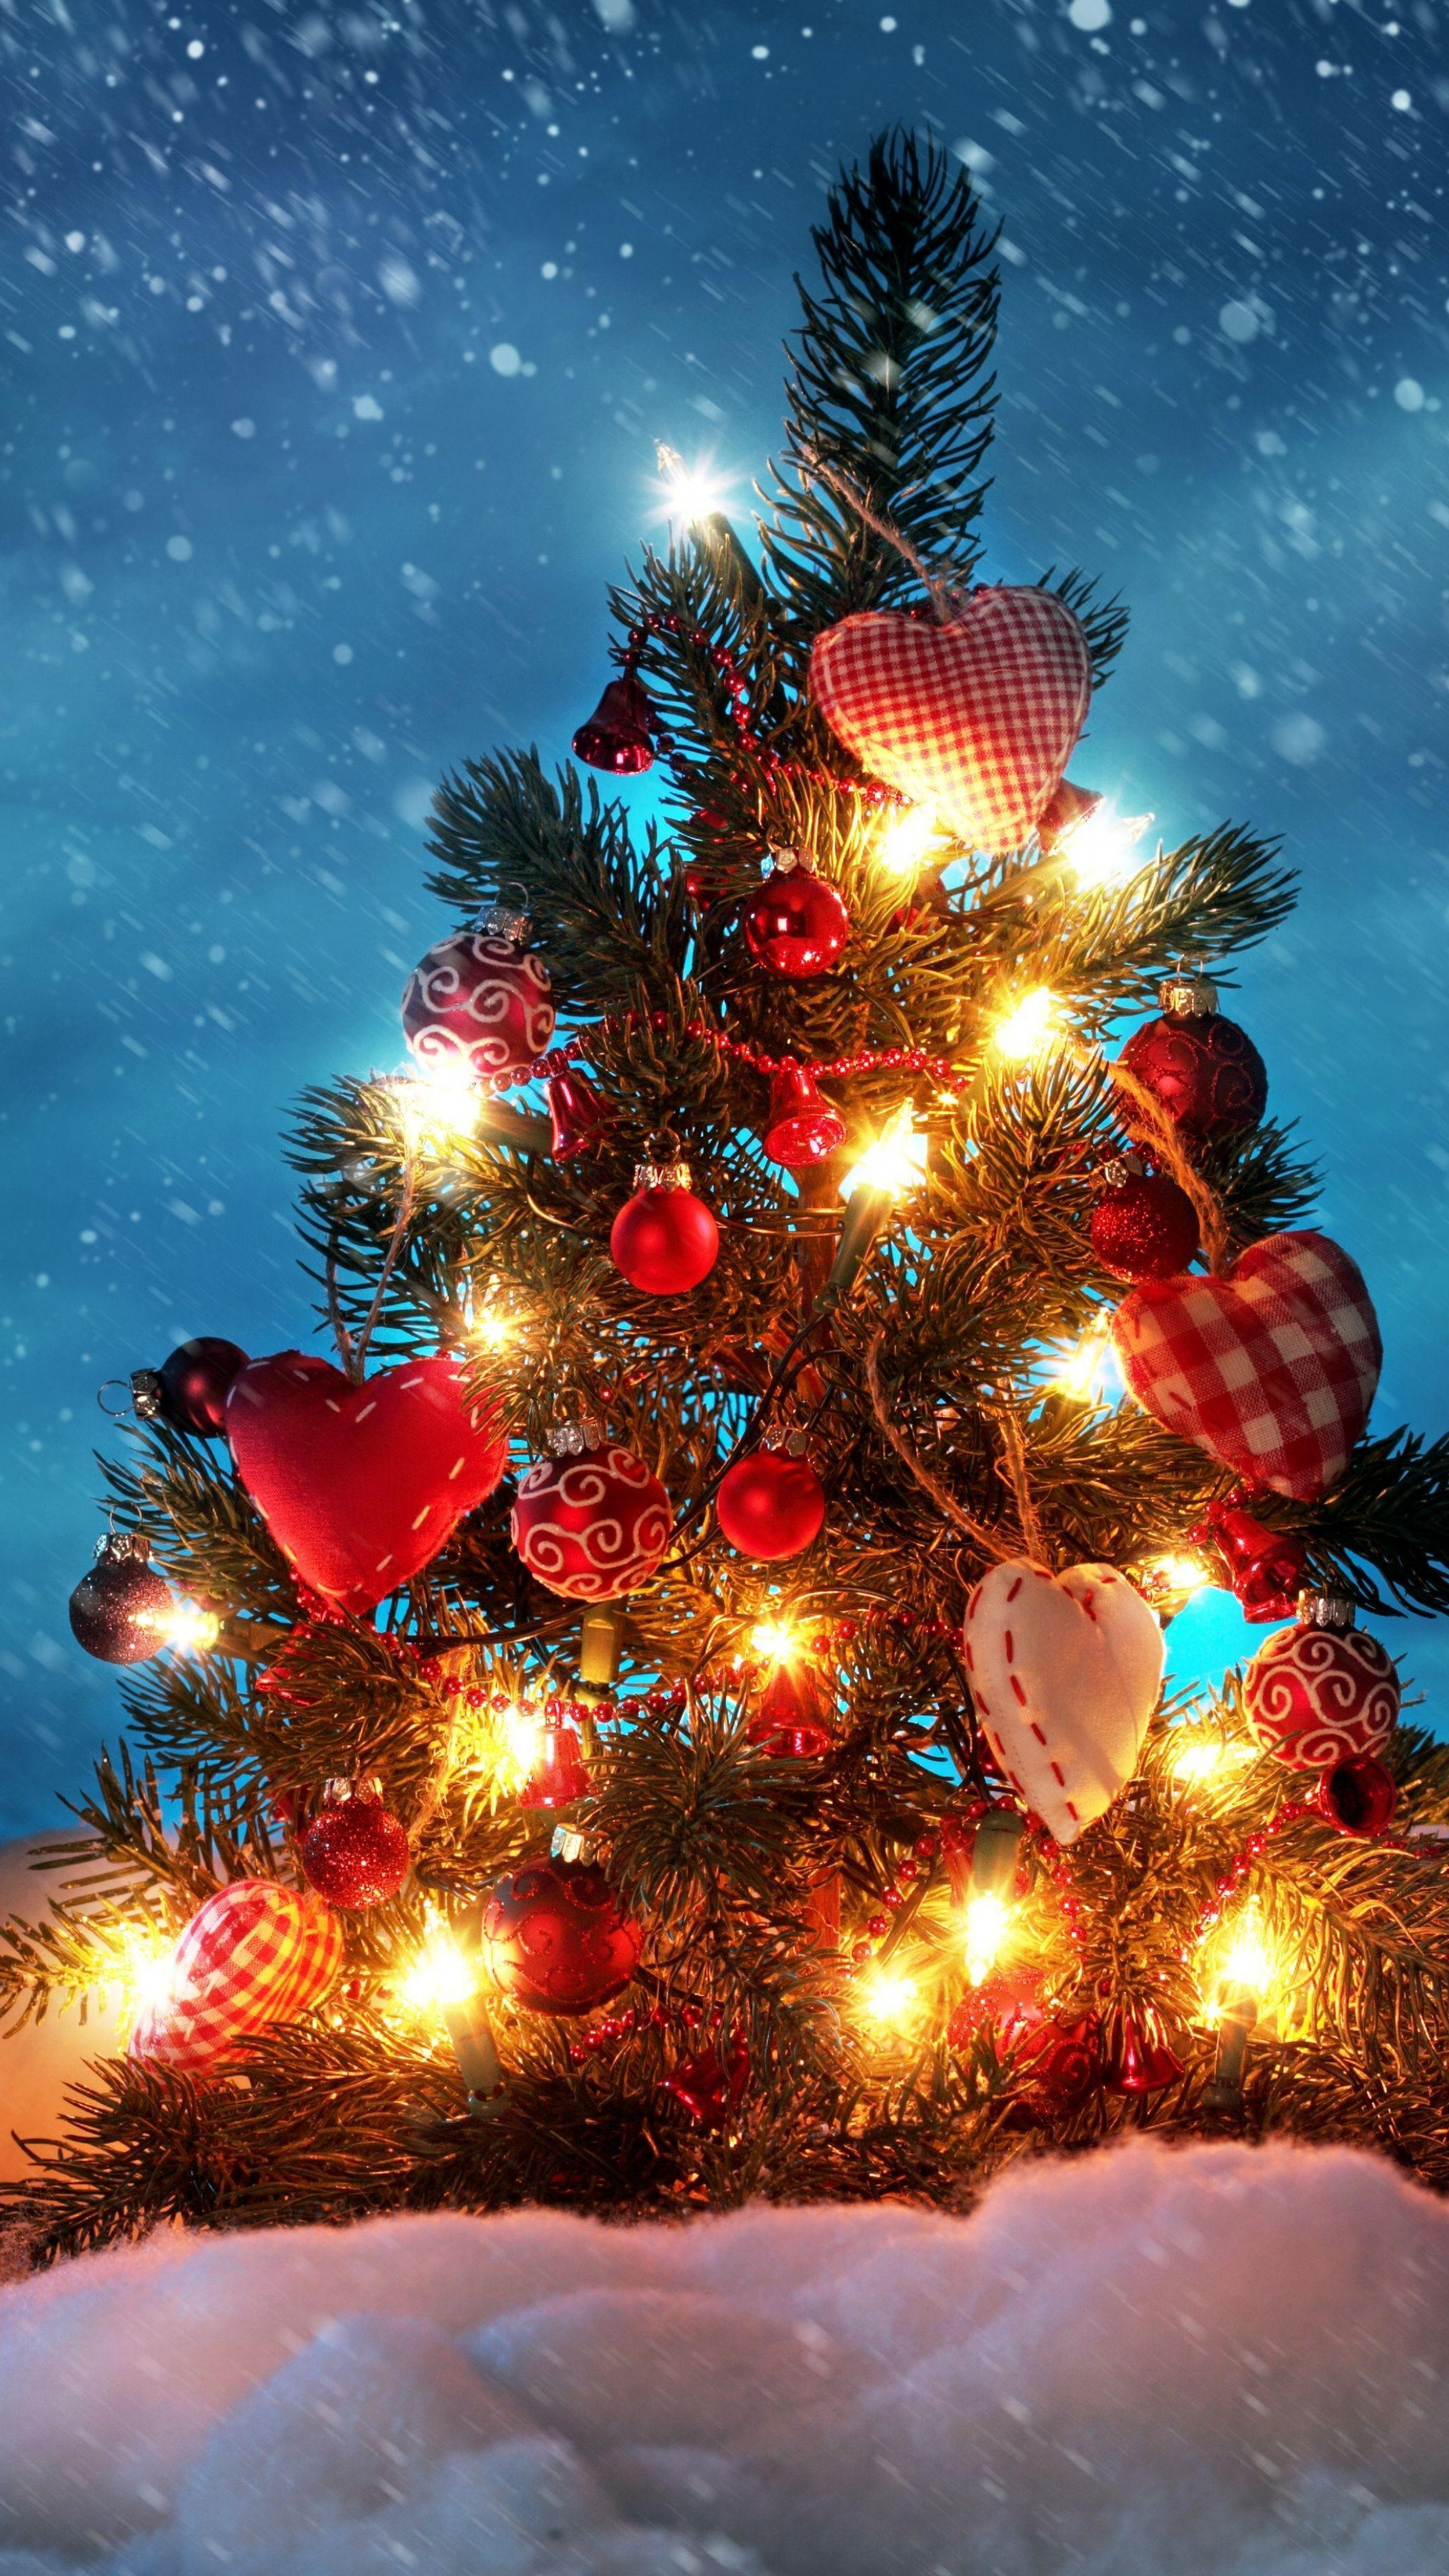 albero di natale sfondo del desktop,albero di natale,decorazione natalizia,albero,abete rosso colorado,natale